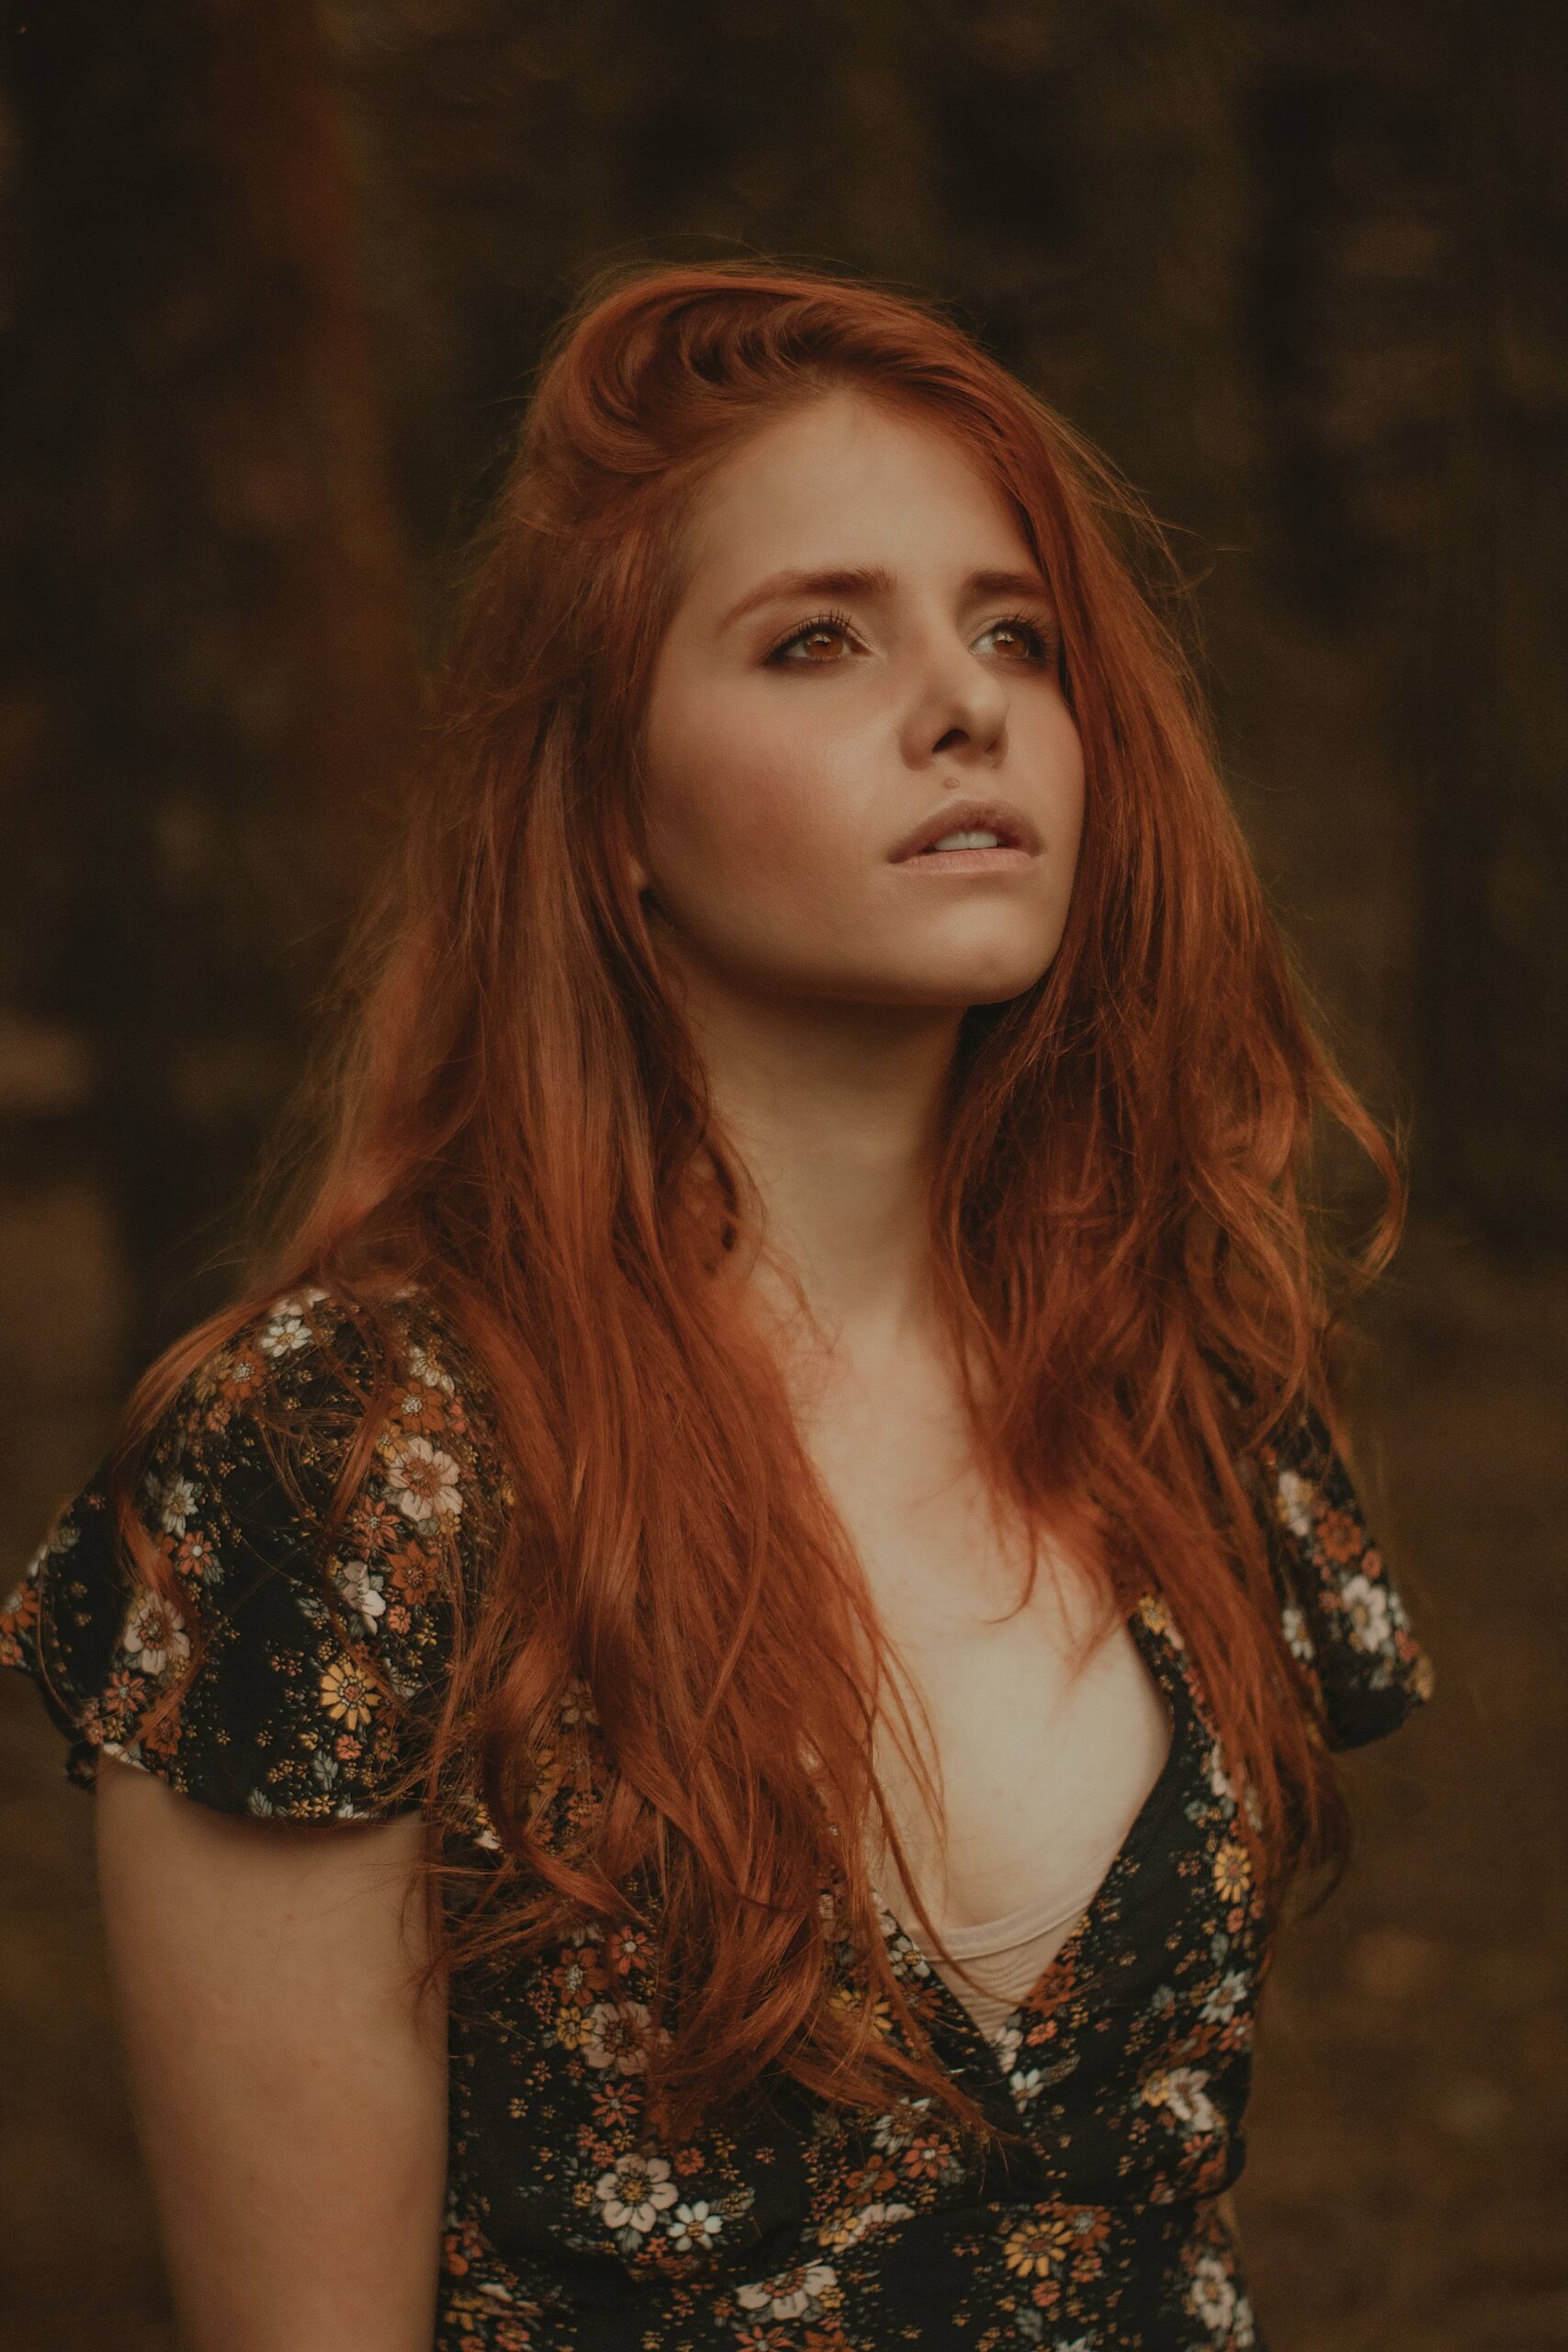 Girls redhead irish Photographer captures